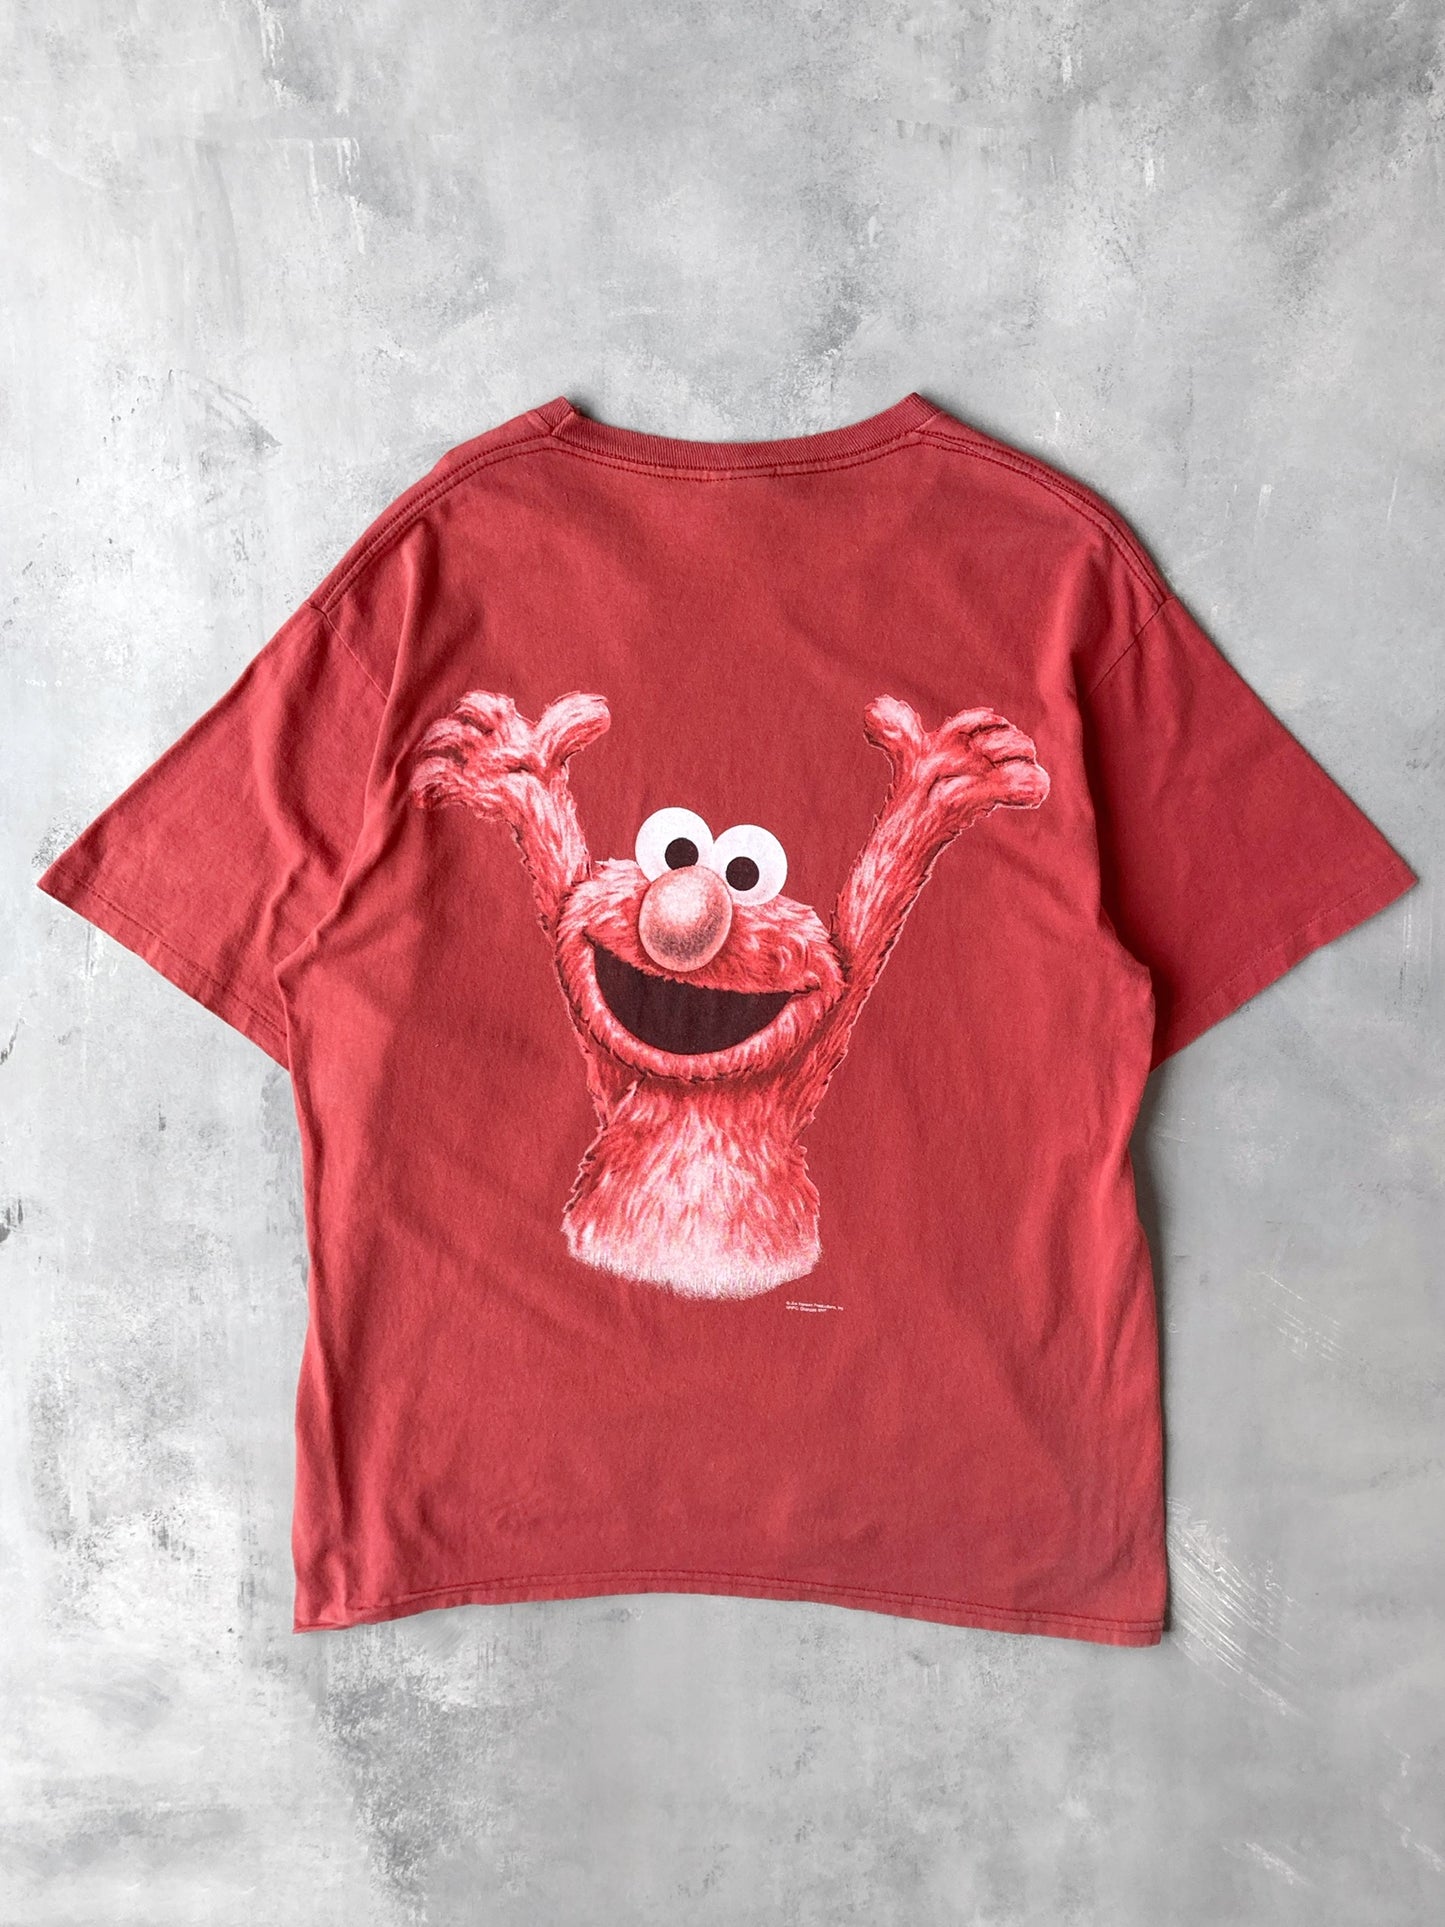 Monsterwear Elmo Spoof T-Shirt 90's - XL